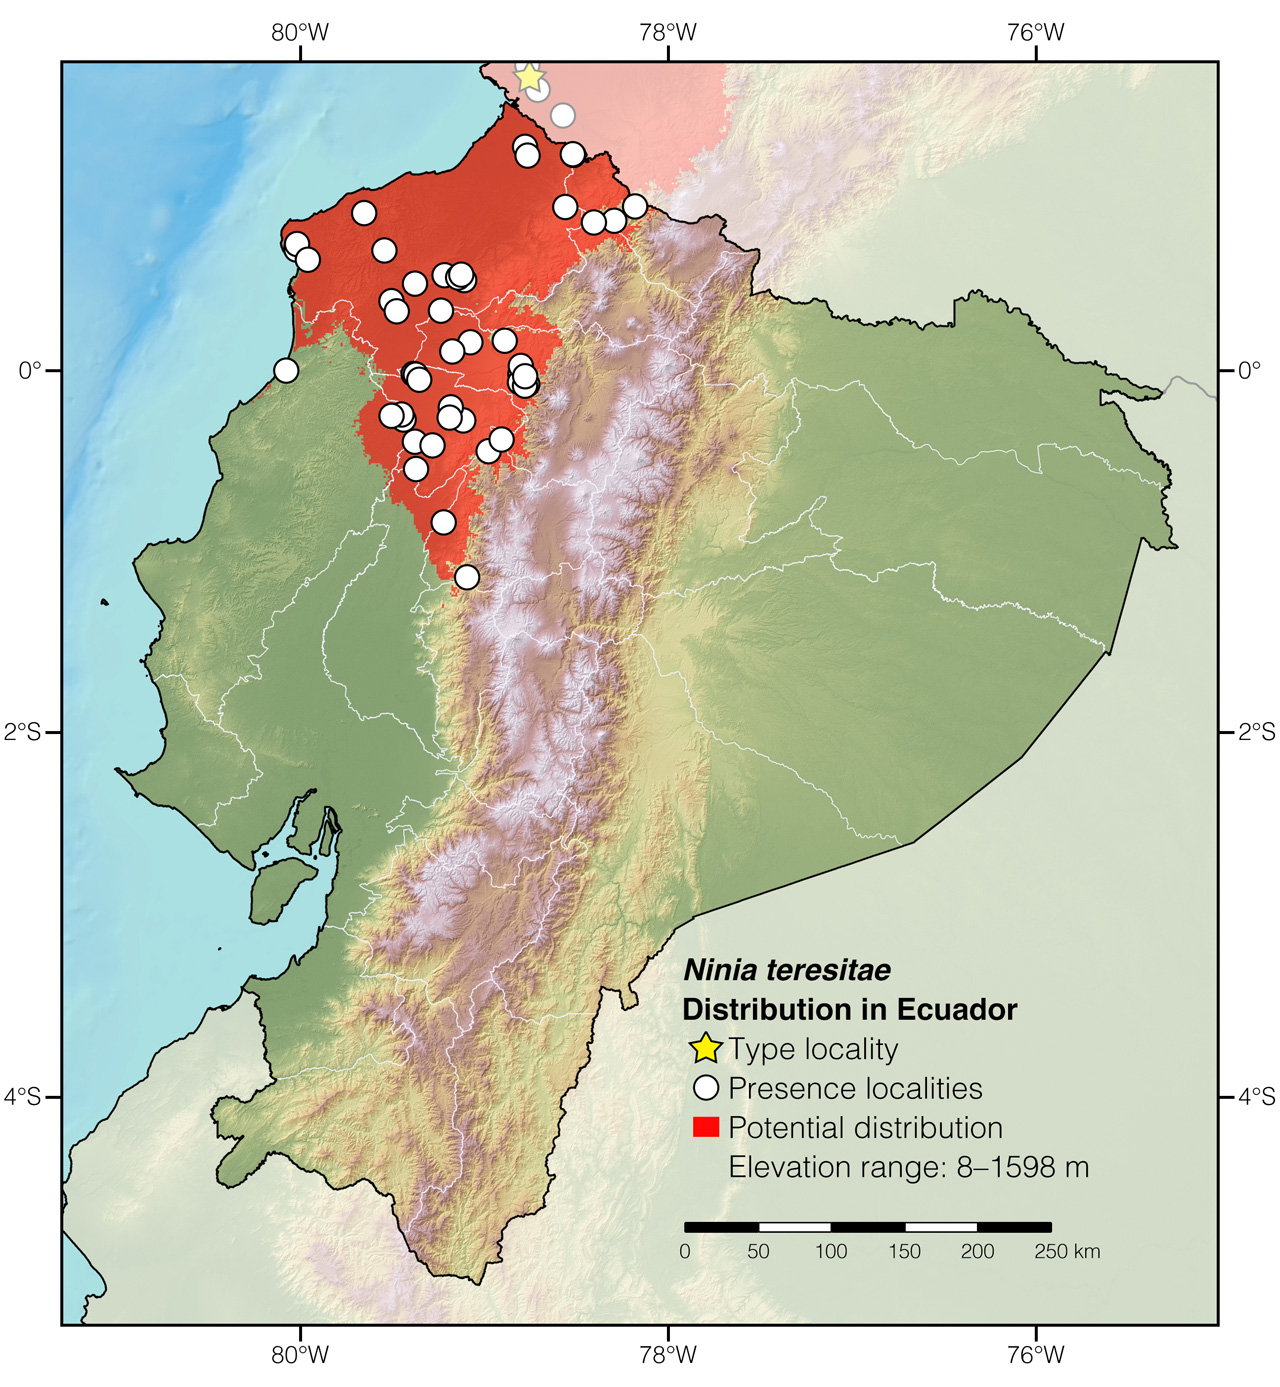 Distribution of Ninia teresitae in Ecuador